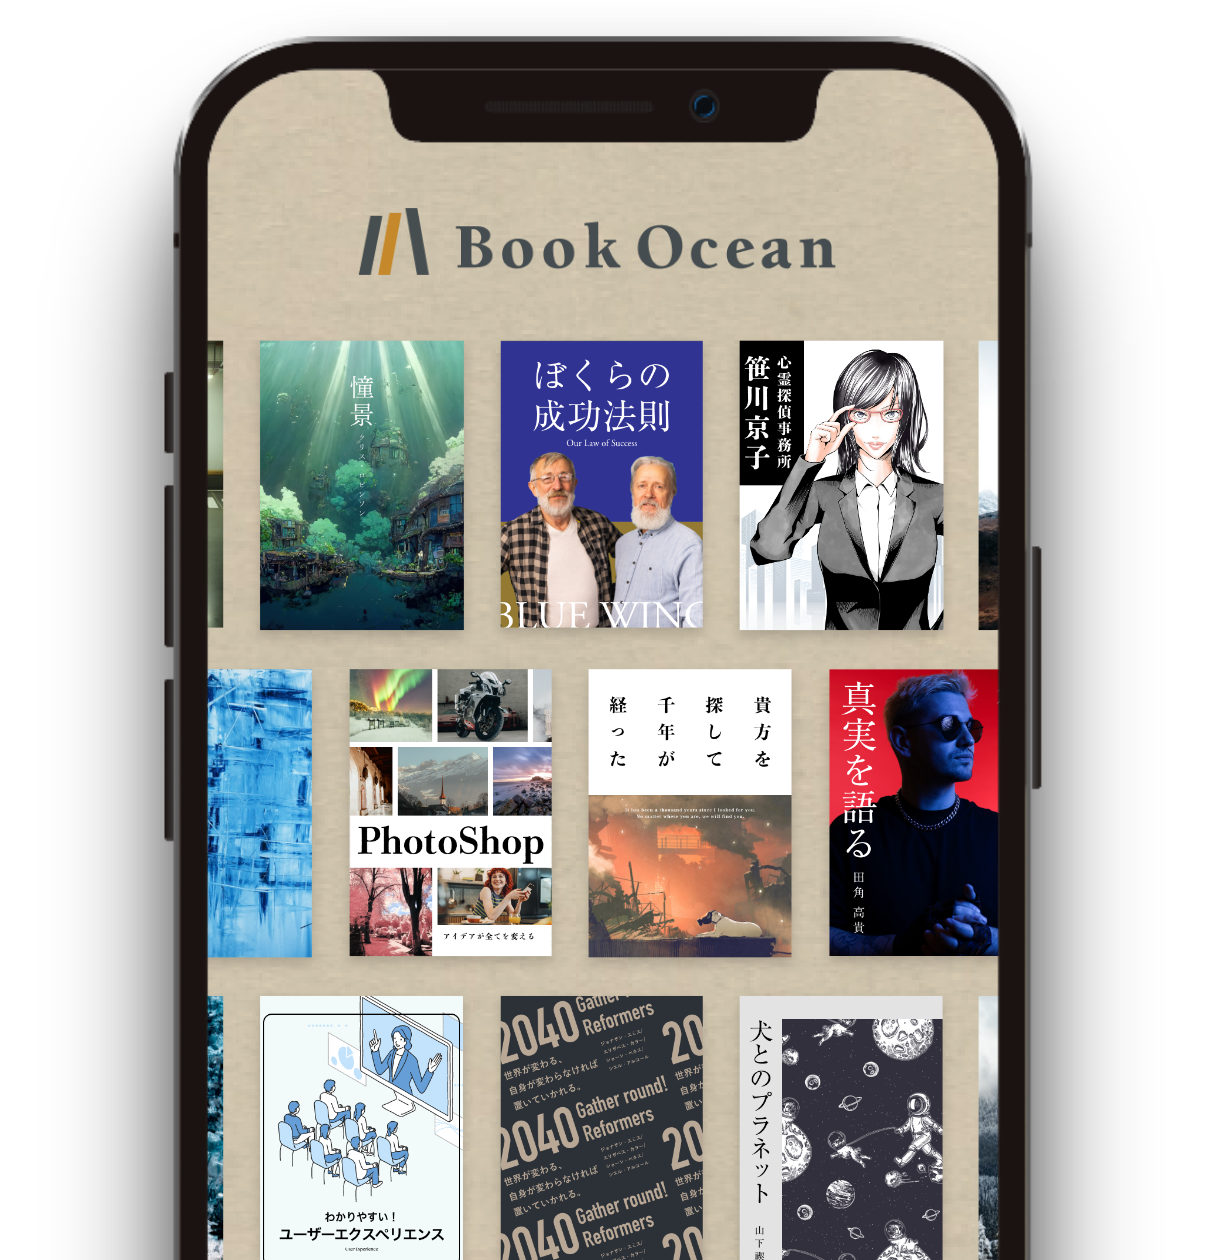 Book Ocean